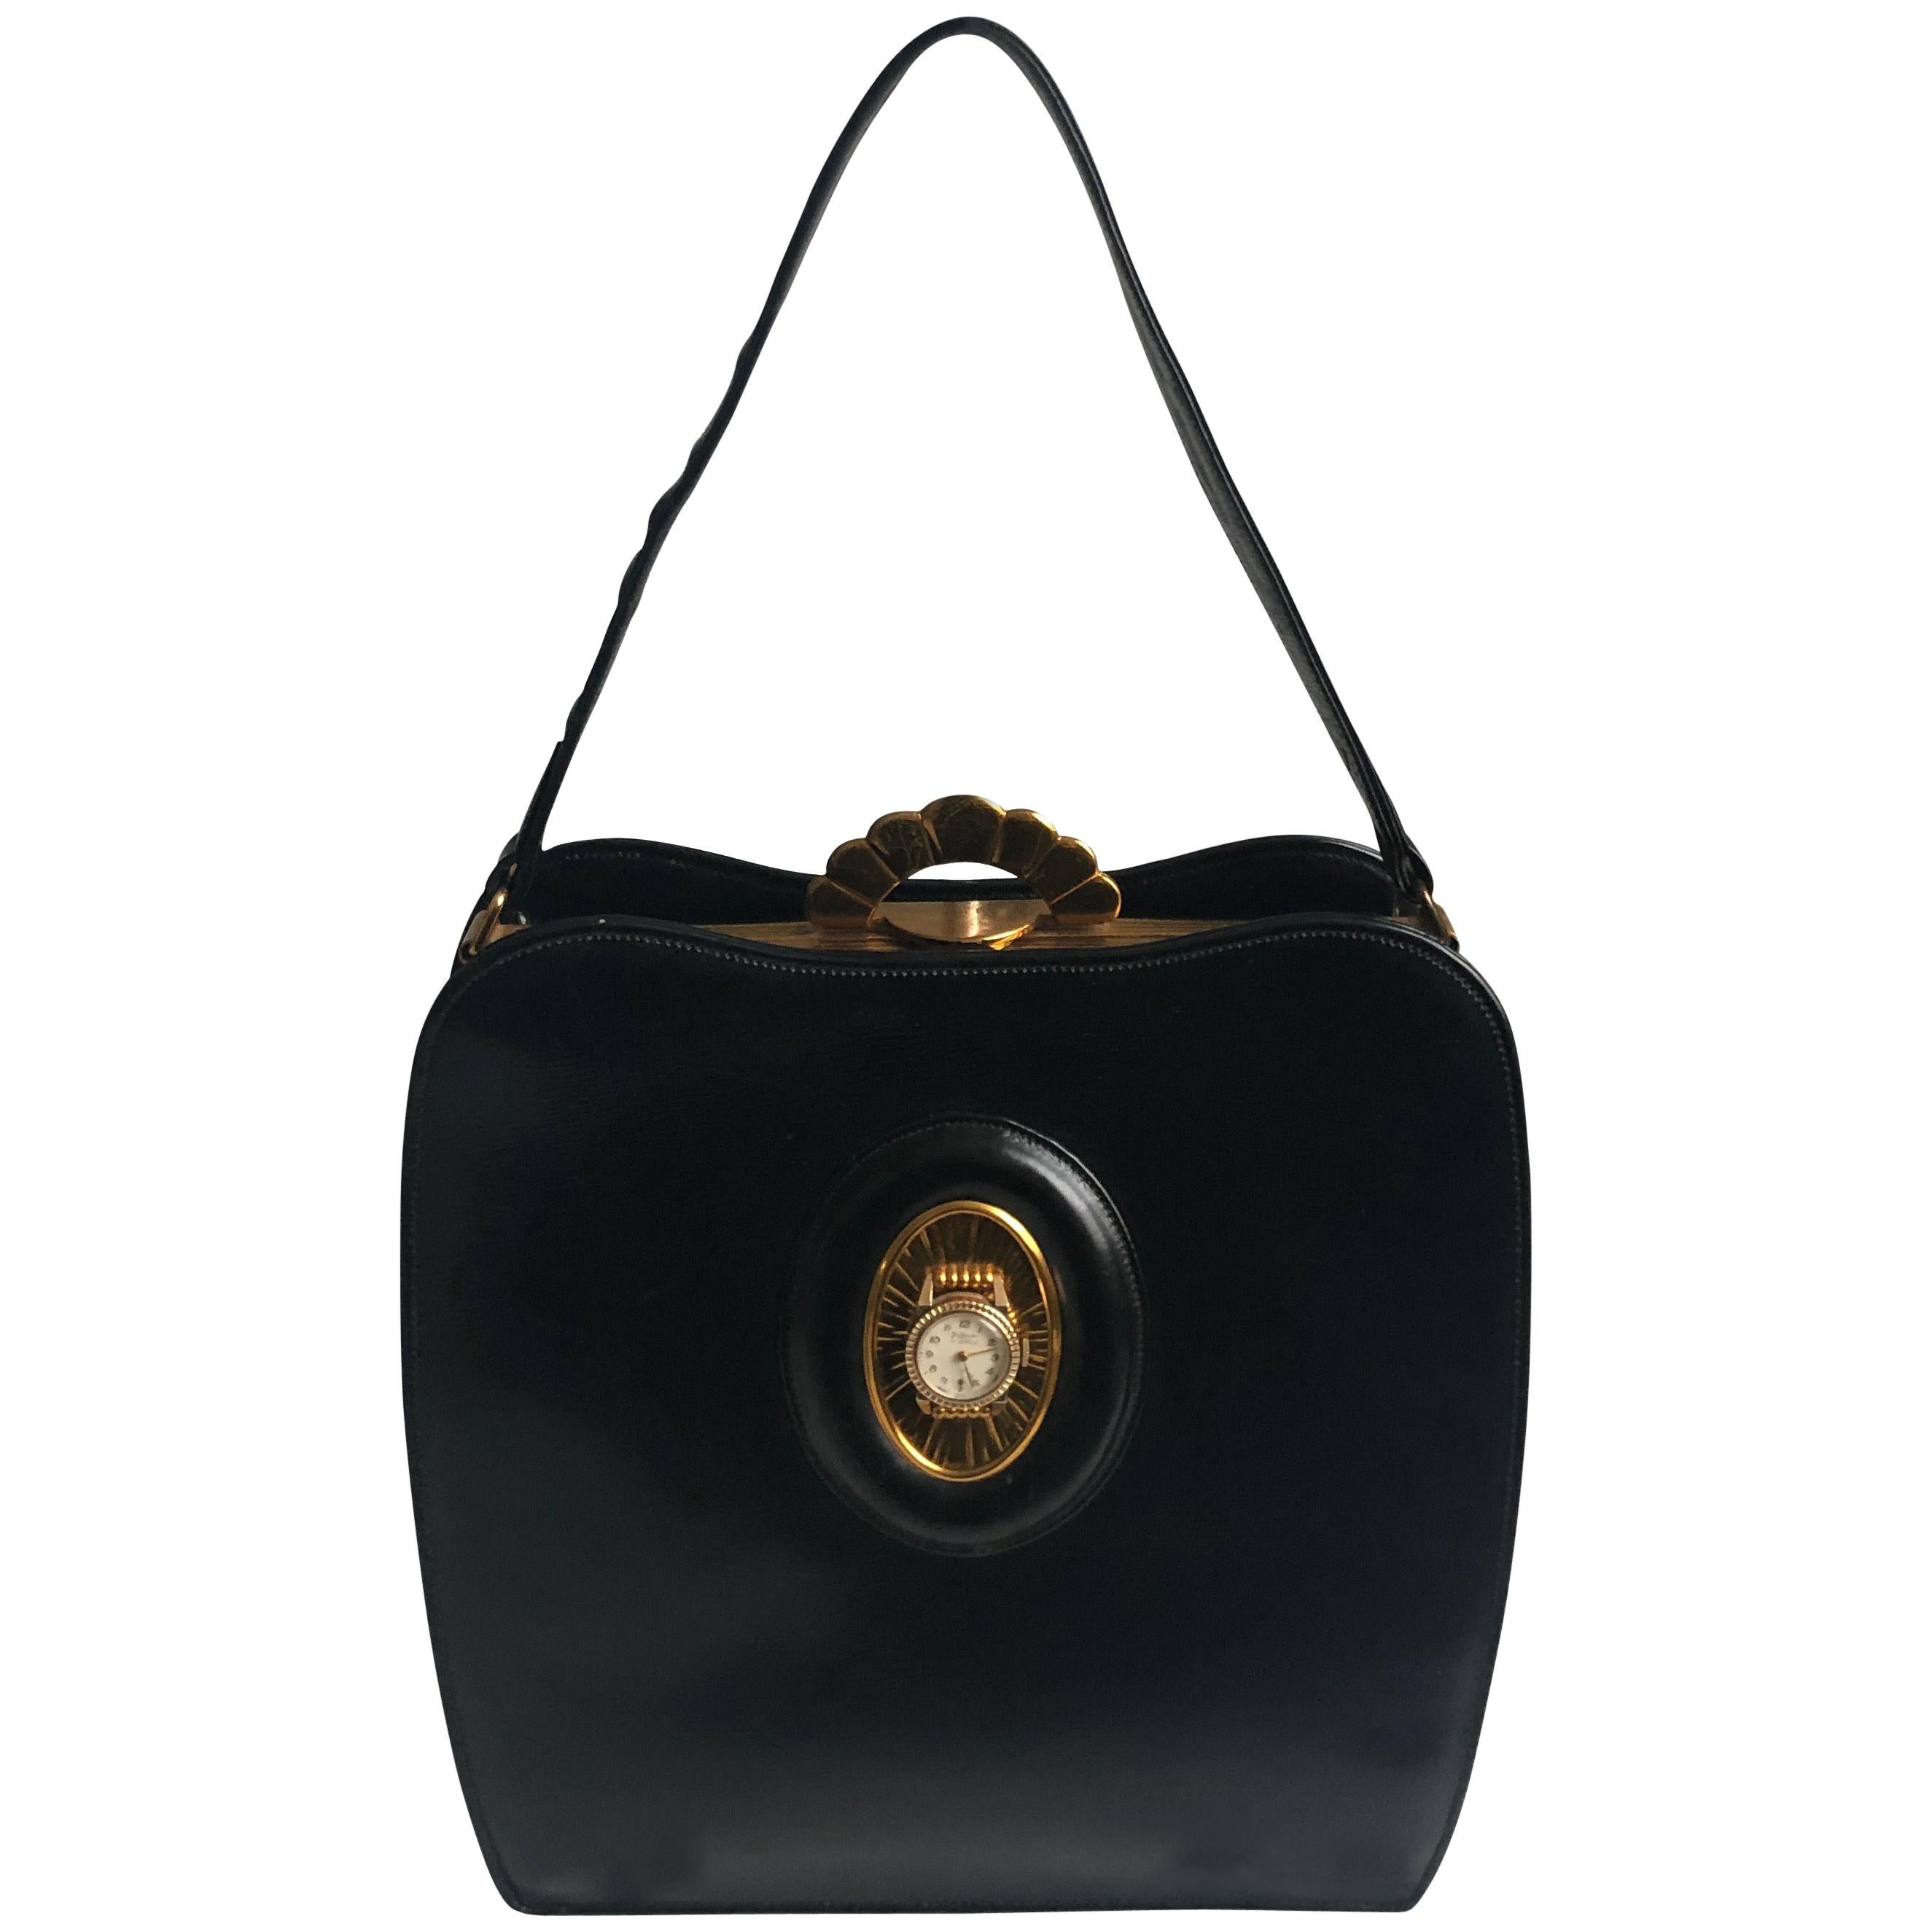 Evans Black Calf Handbag with Clock & Mirror Compact Deco Style 50s Vintage